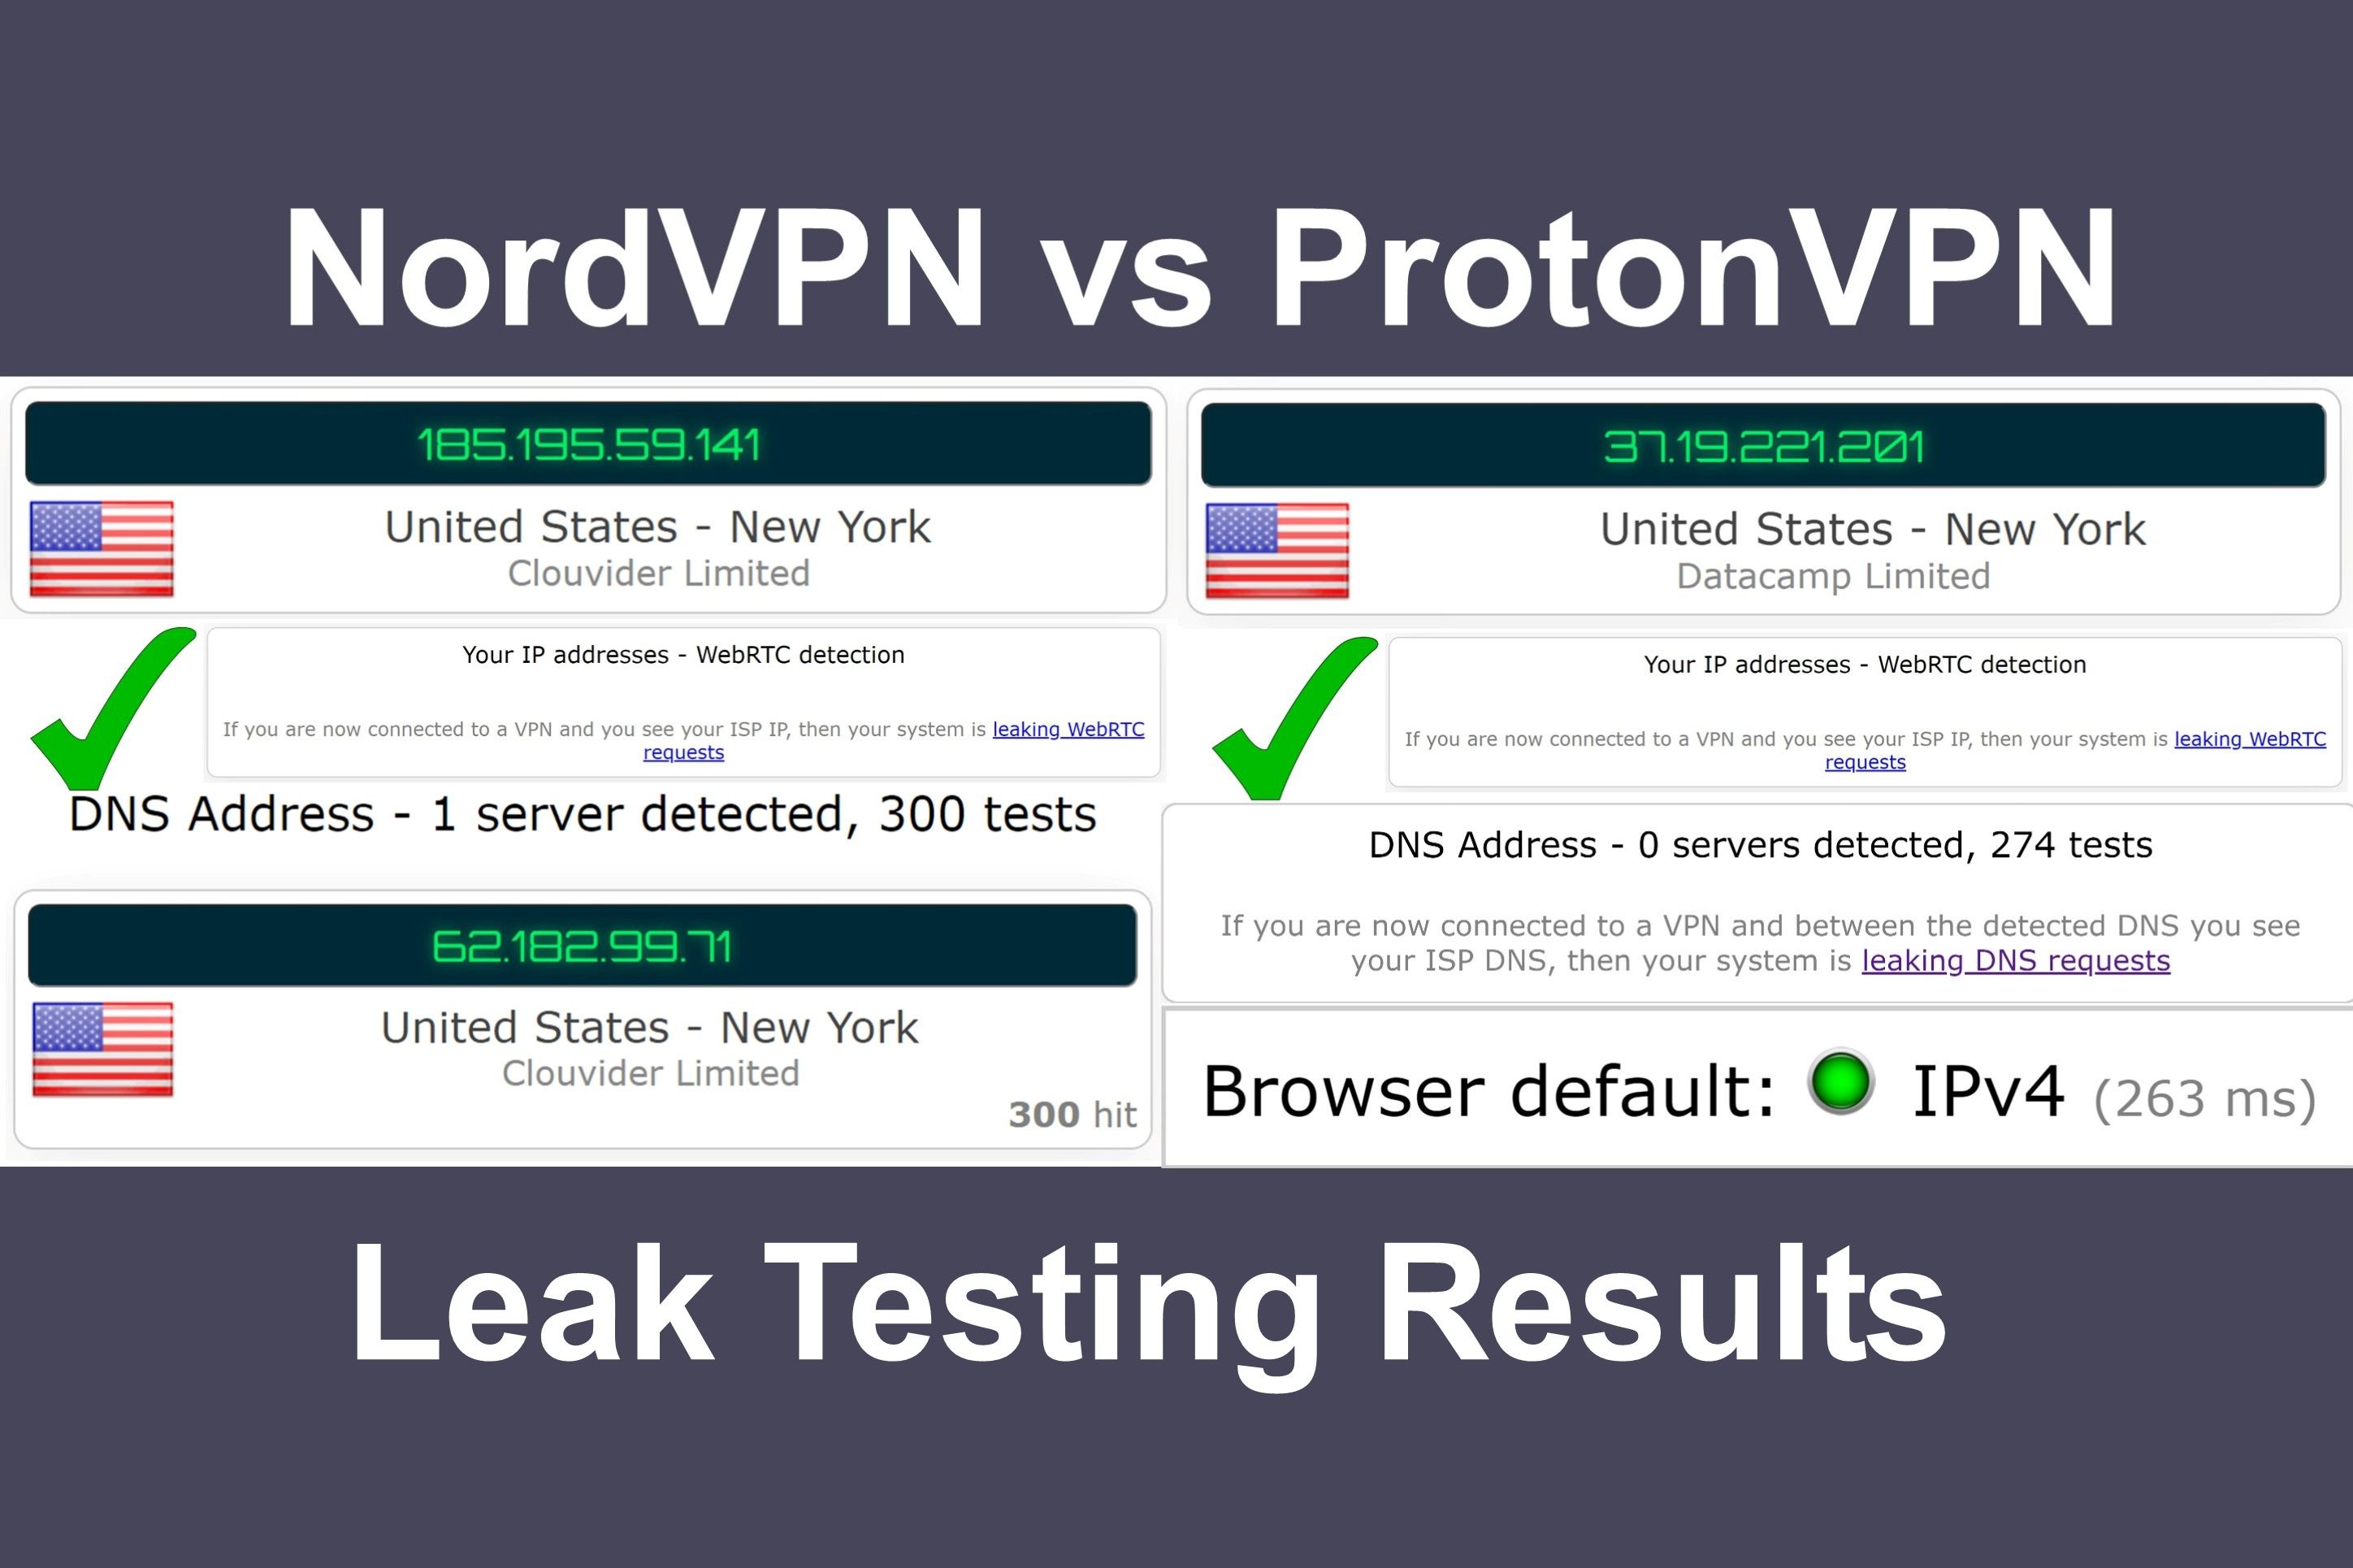 NordVPN vs ProtonVPN leak testing results